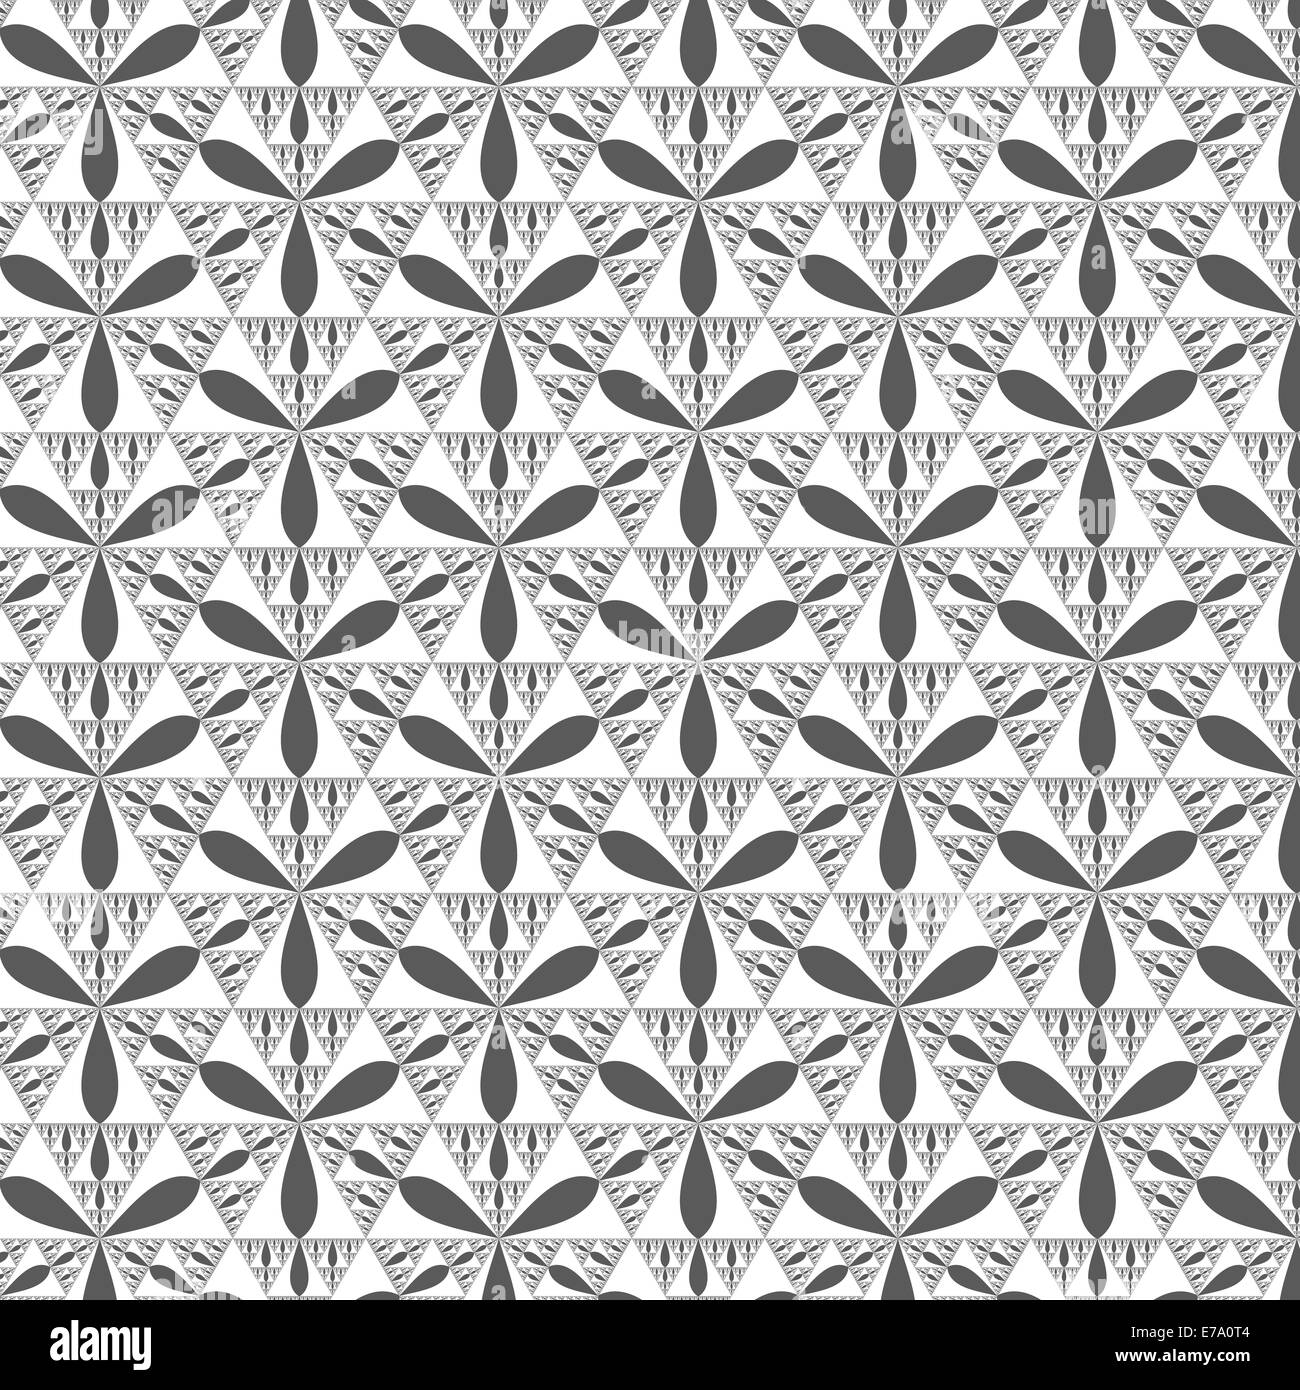 Holzkohle und weißen Sierpinski Dreiecke bilden eine Muster Stockfoto